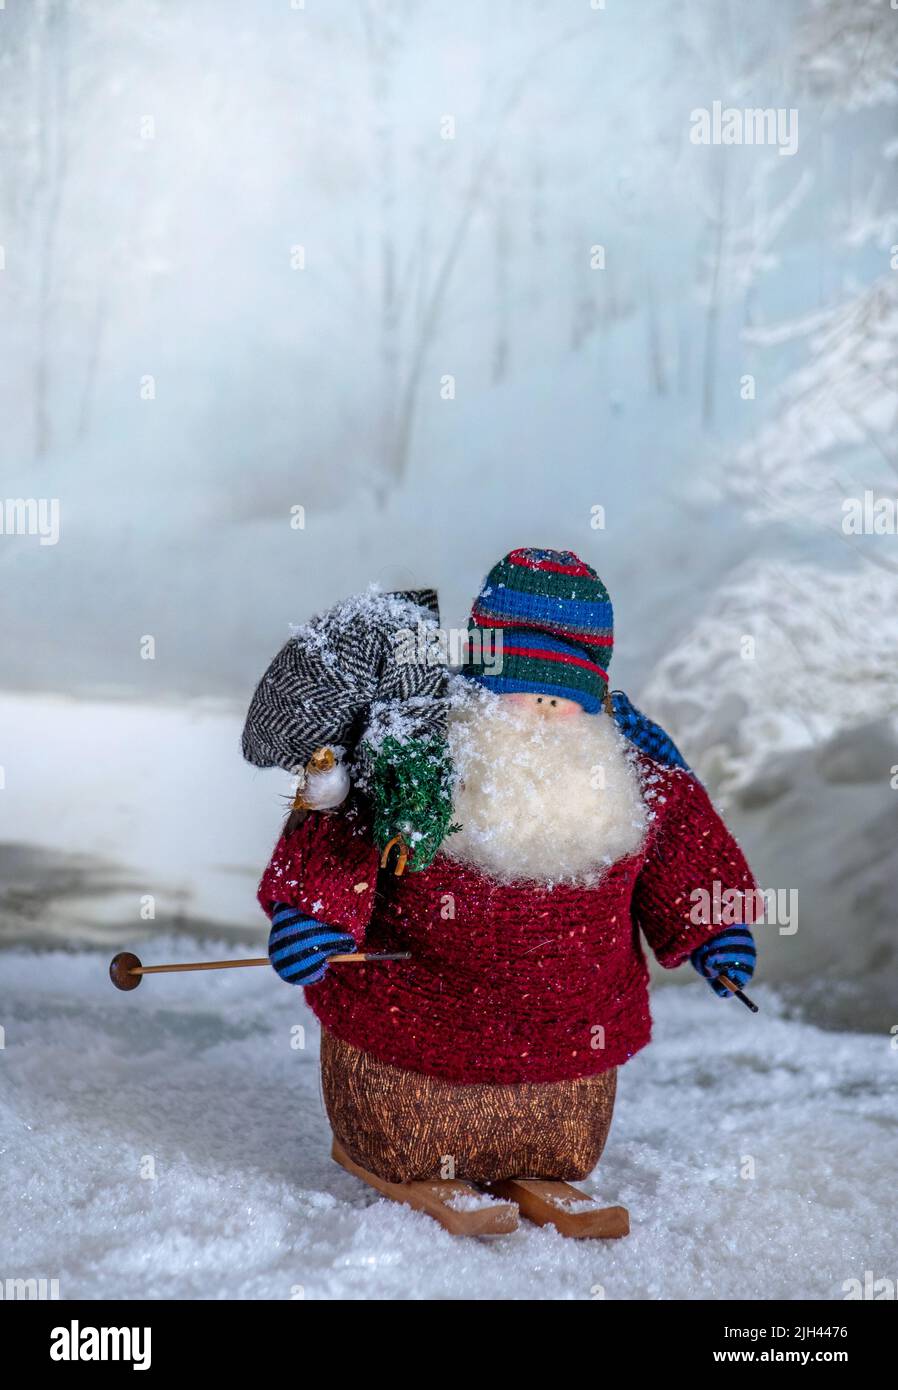 Komische Puppe ist ein alter weihnachtsmann auf Skiern und eine winterliche Kulisse, komplett mit seiner Tasche mit Spielzeug und einem winzigen weihnachtsbaum Stockfoto